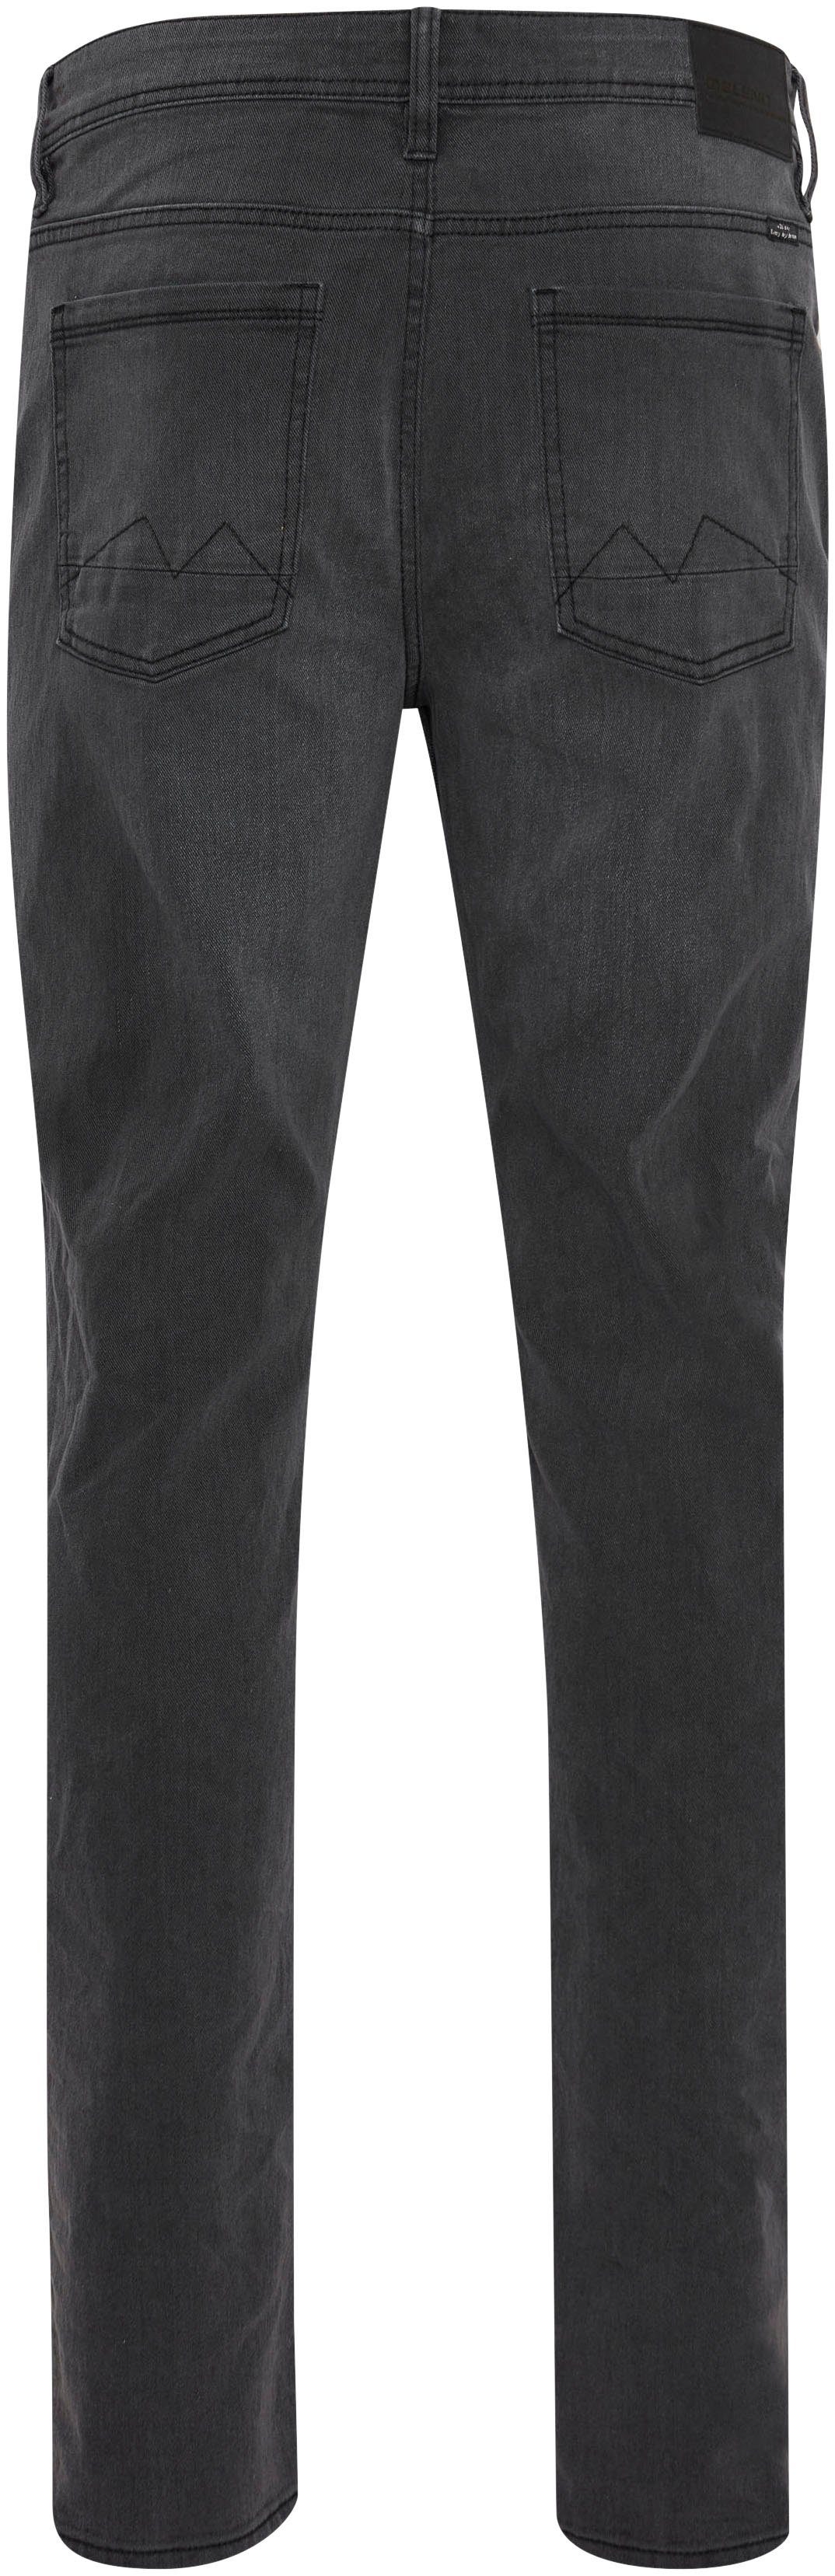 Blend Twister BL-Jeans fit grey 5-Pocket-Jeans